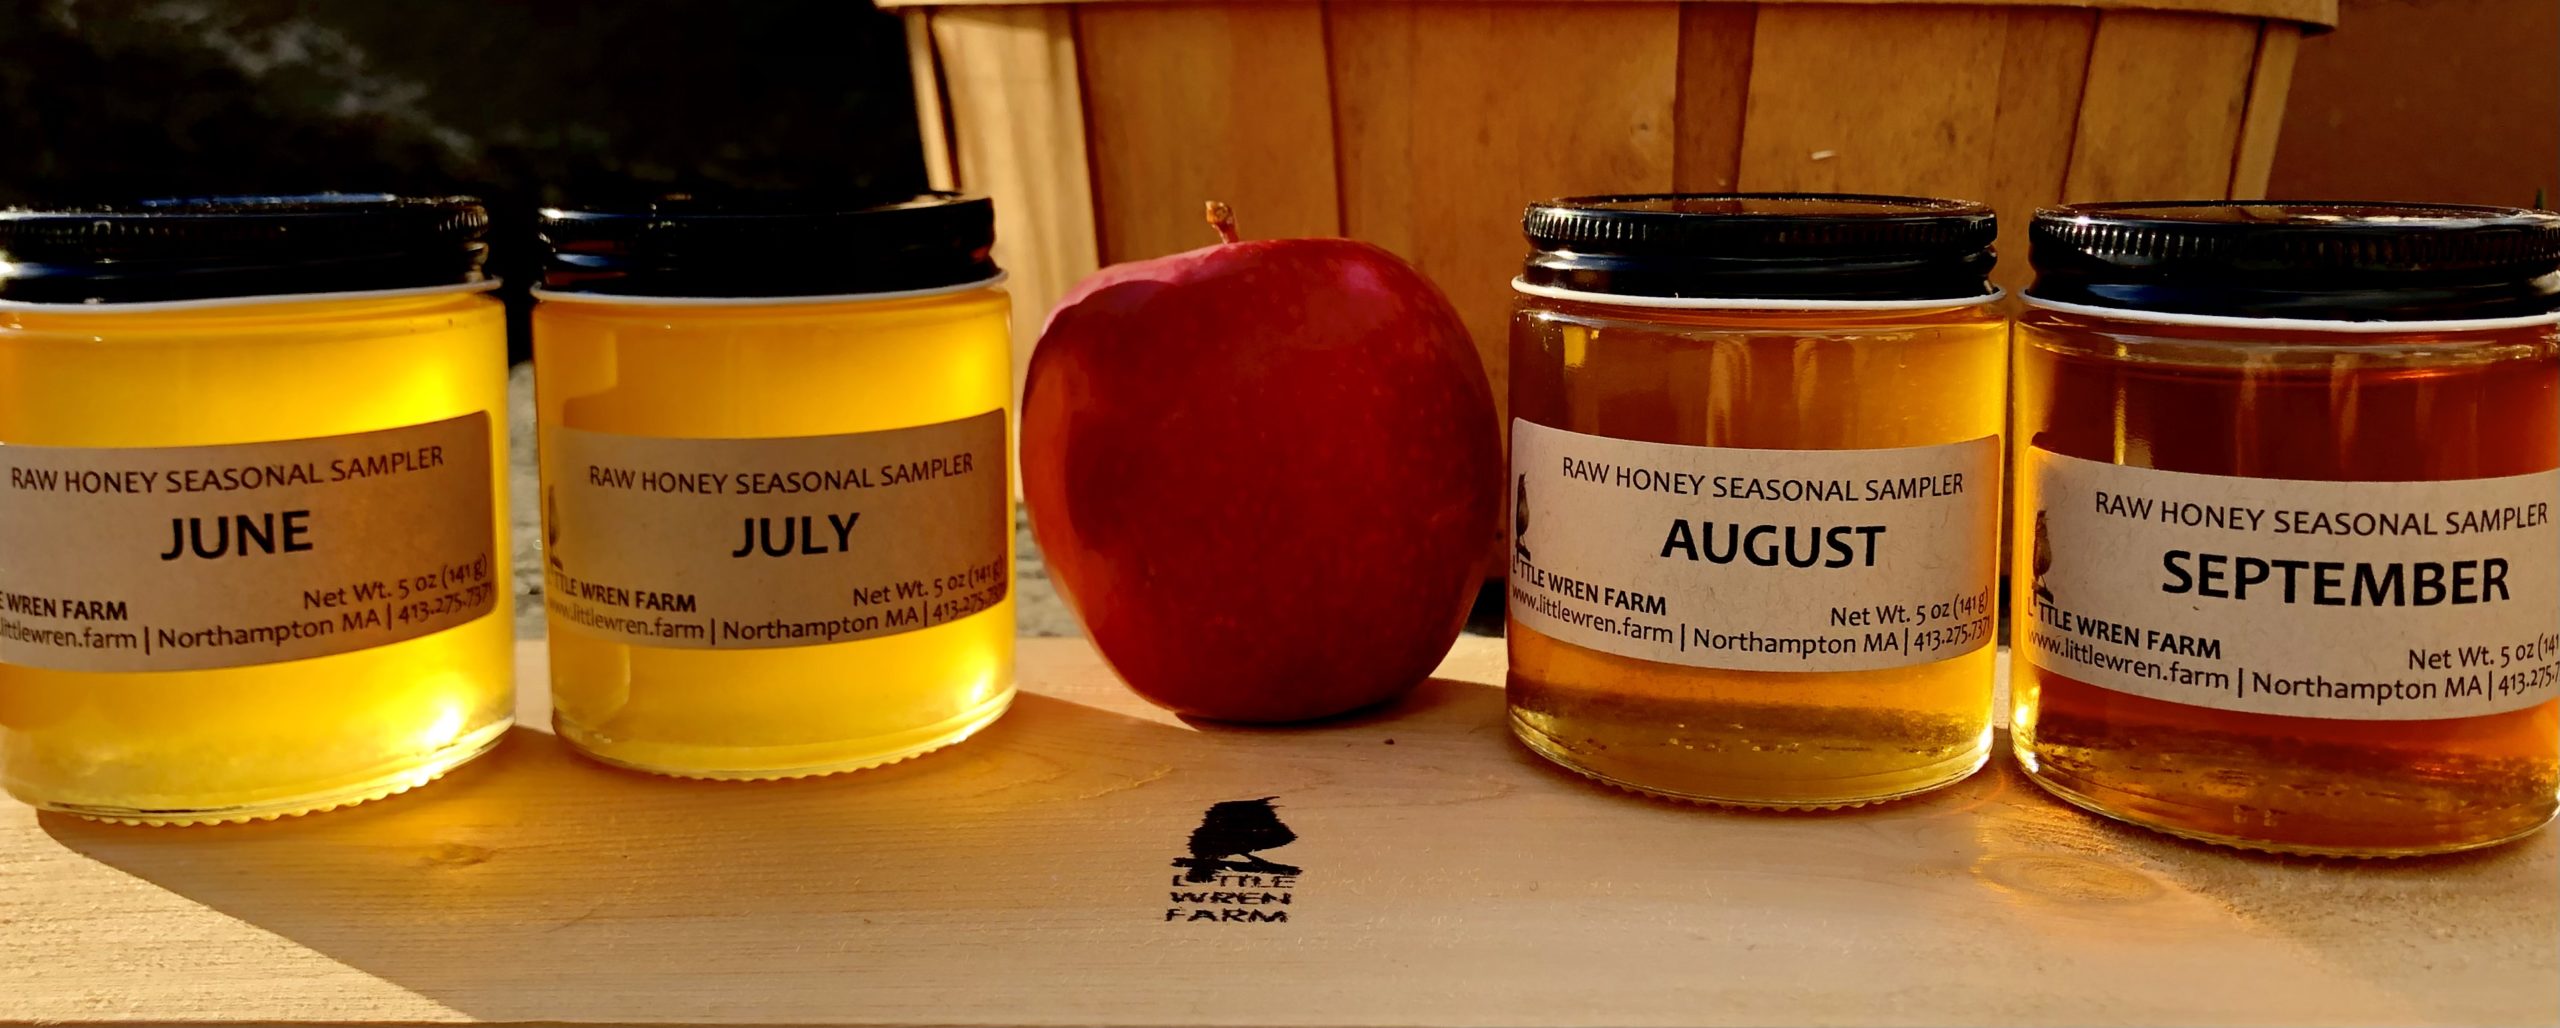 Little Wren Farm Seasonal Honey Sampler